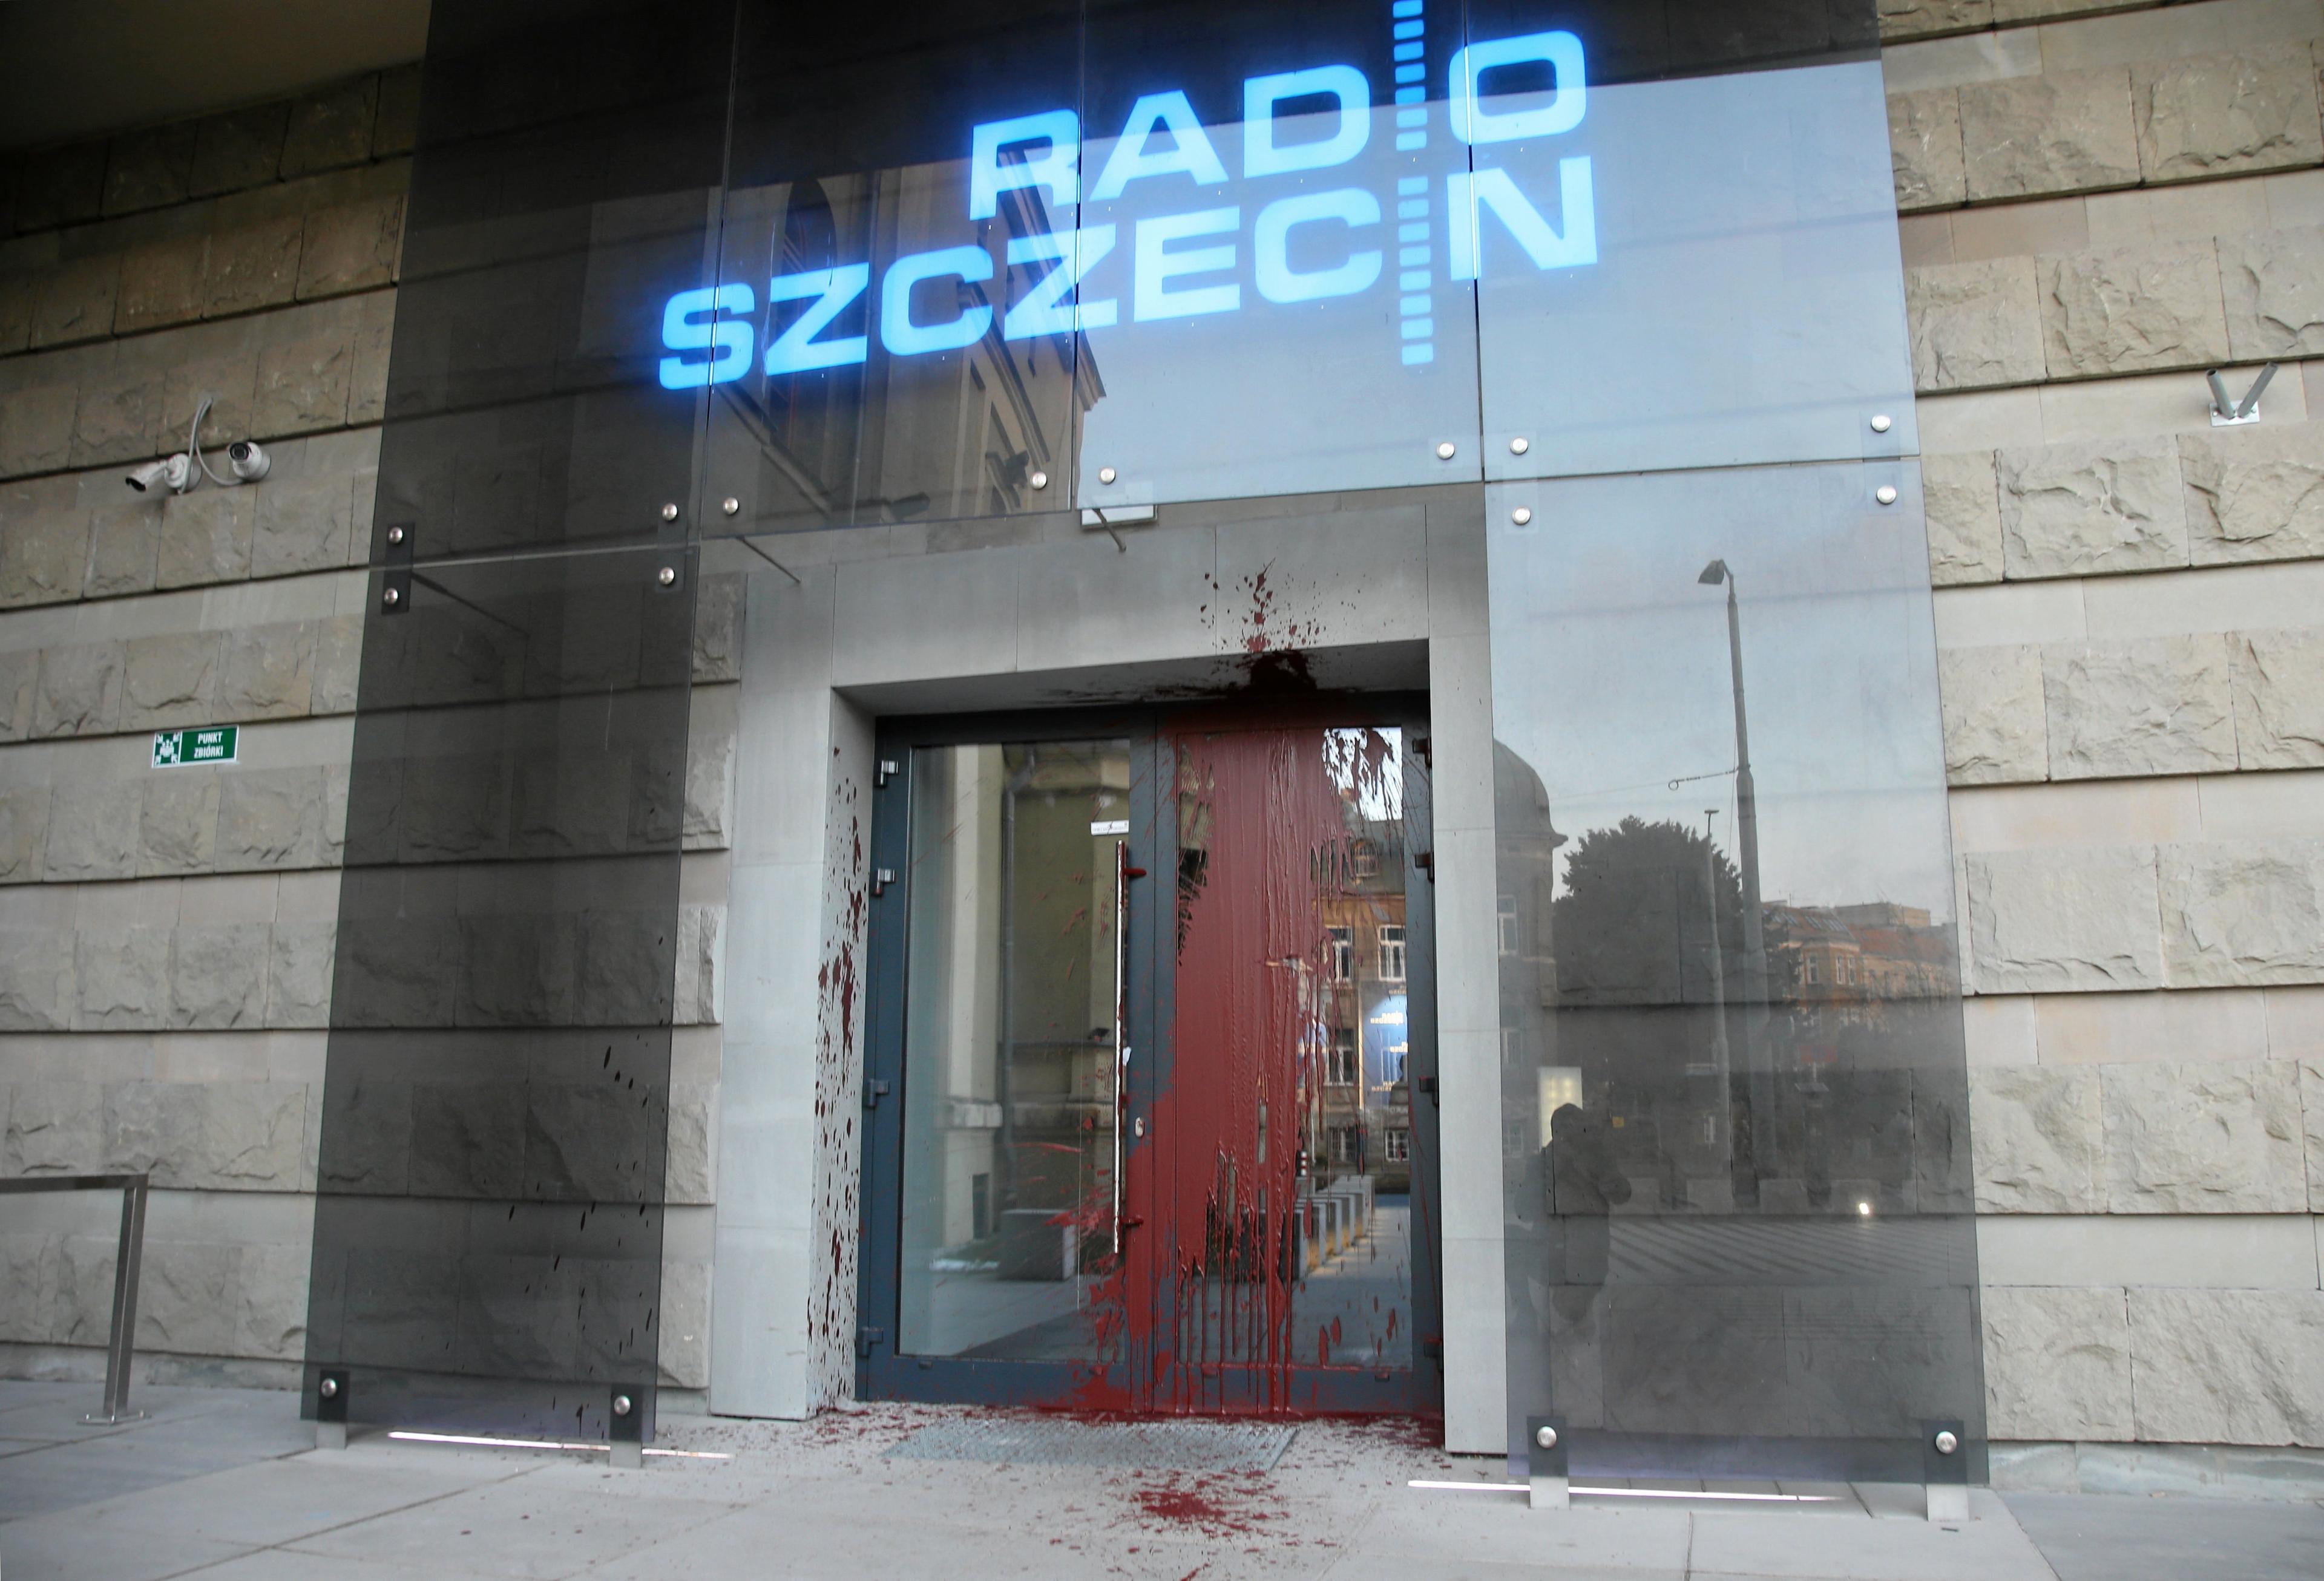 Drzwi z napisem Radio Szczecin oblane czerwoną farbą.